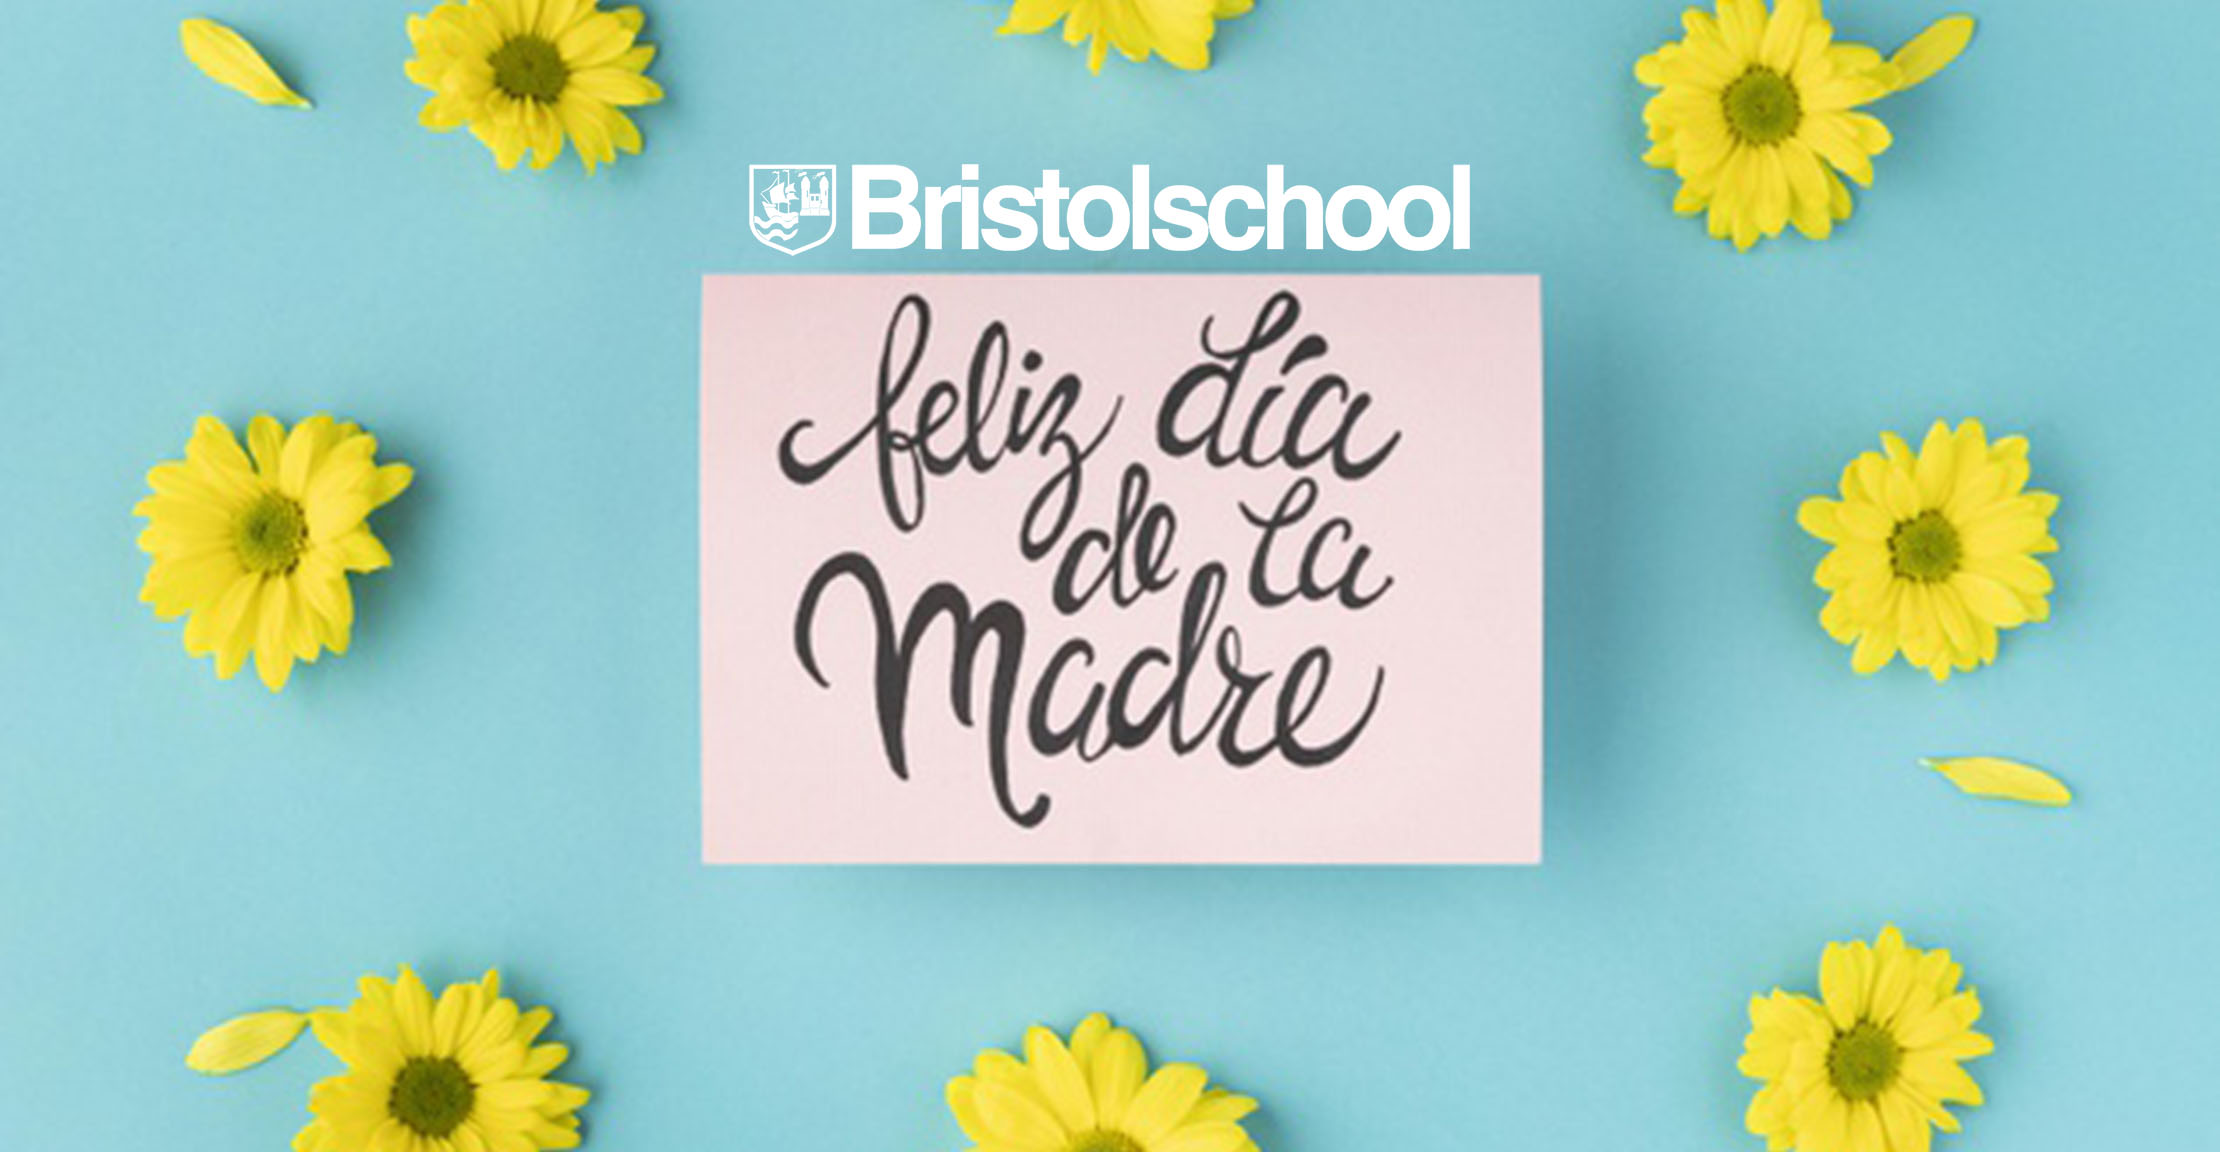 Regalos para niños - Bristol School